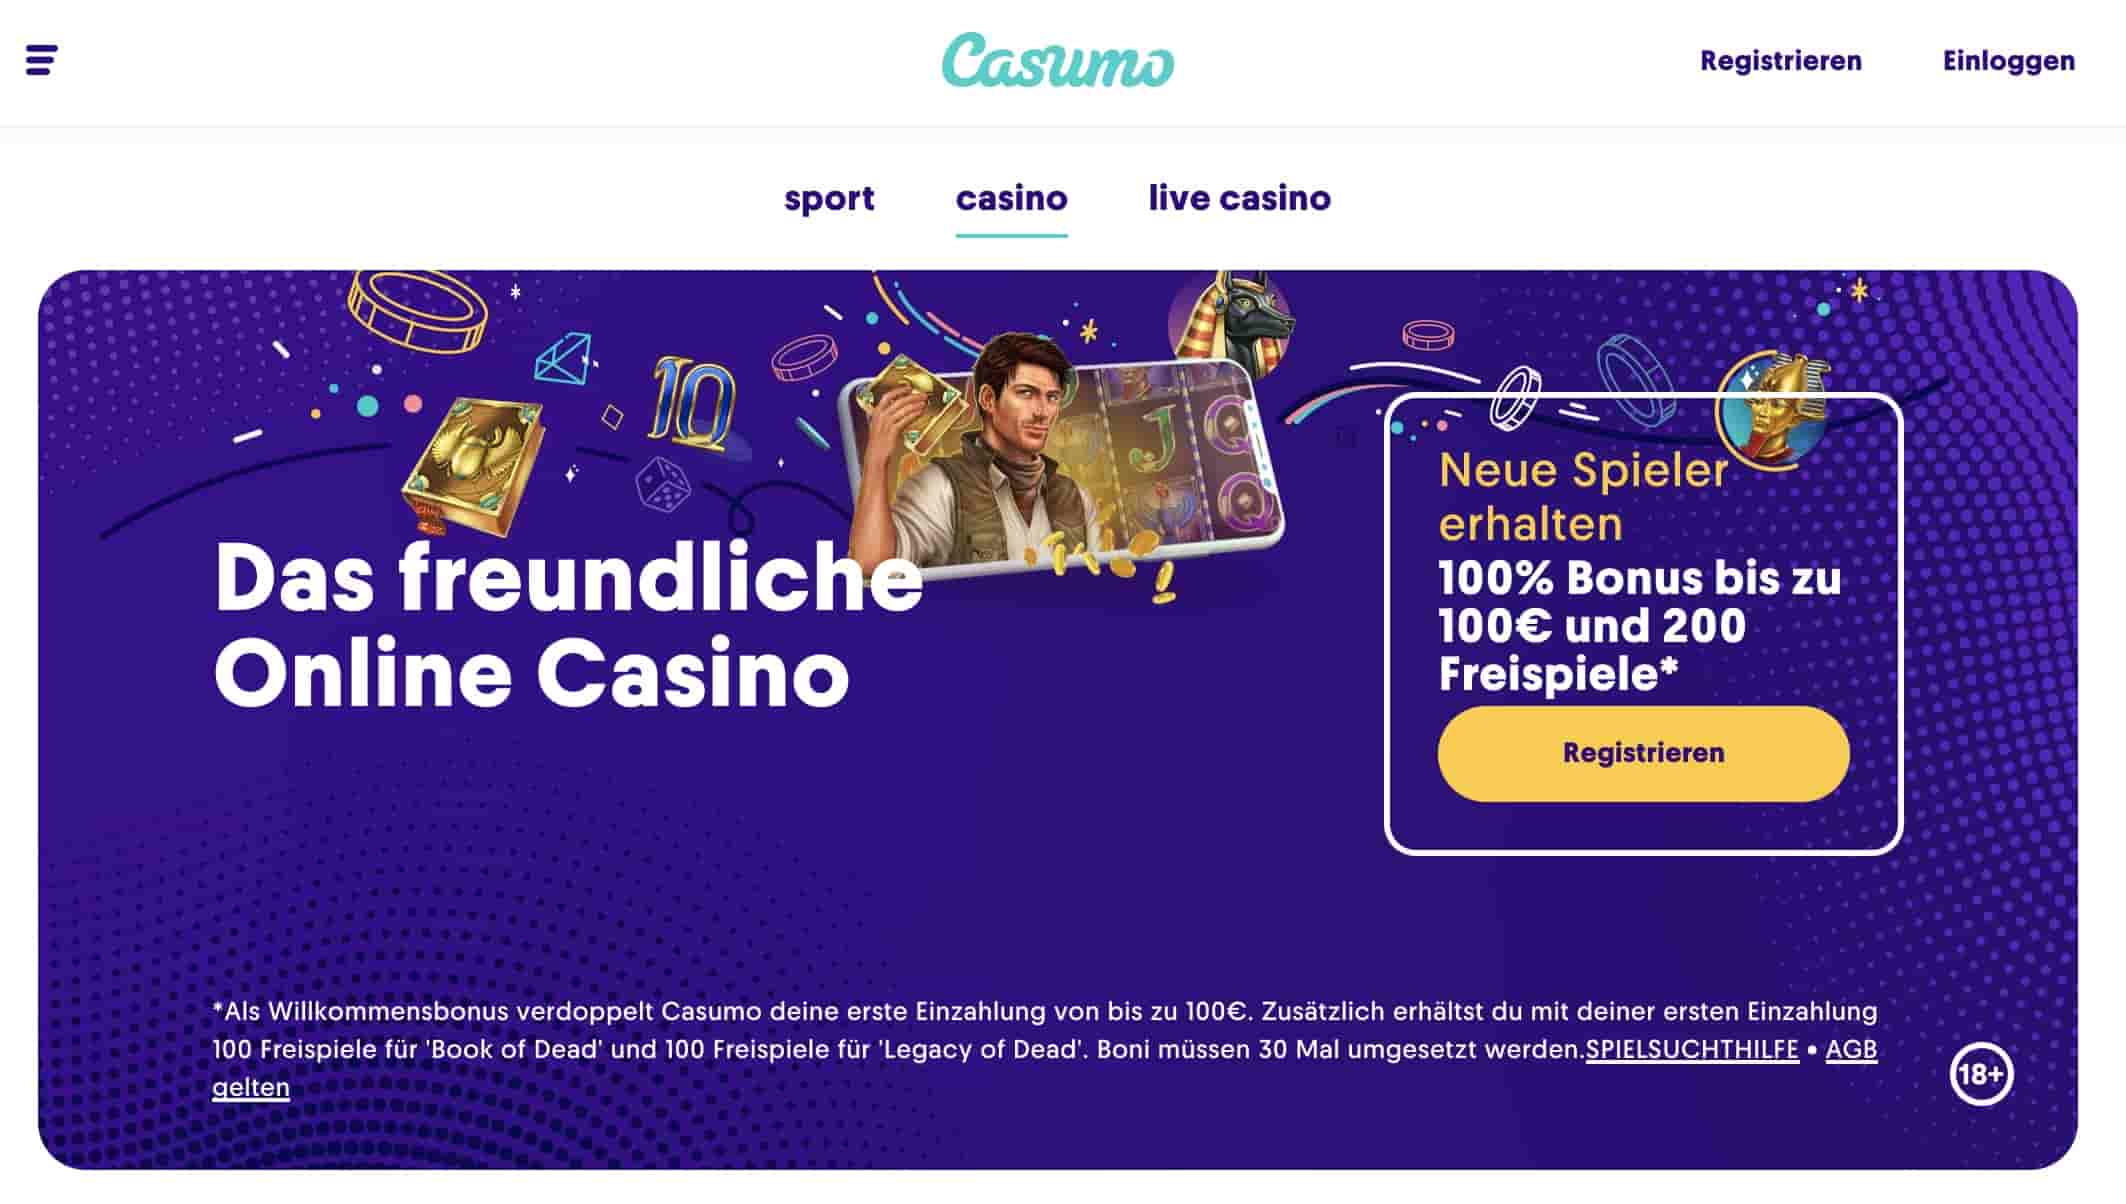 Casumo Casino registrieren